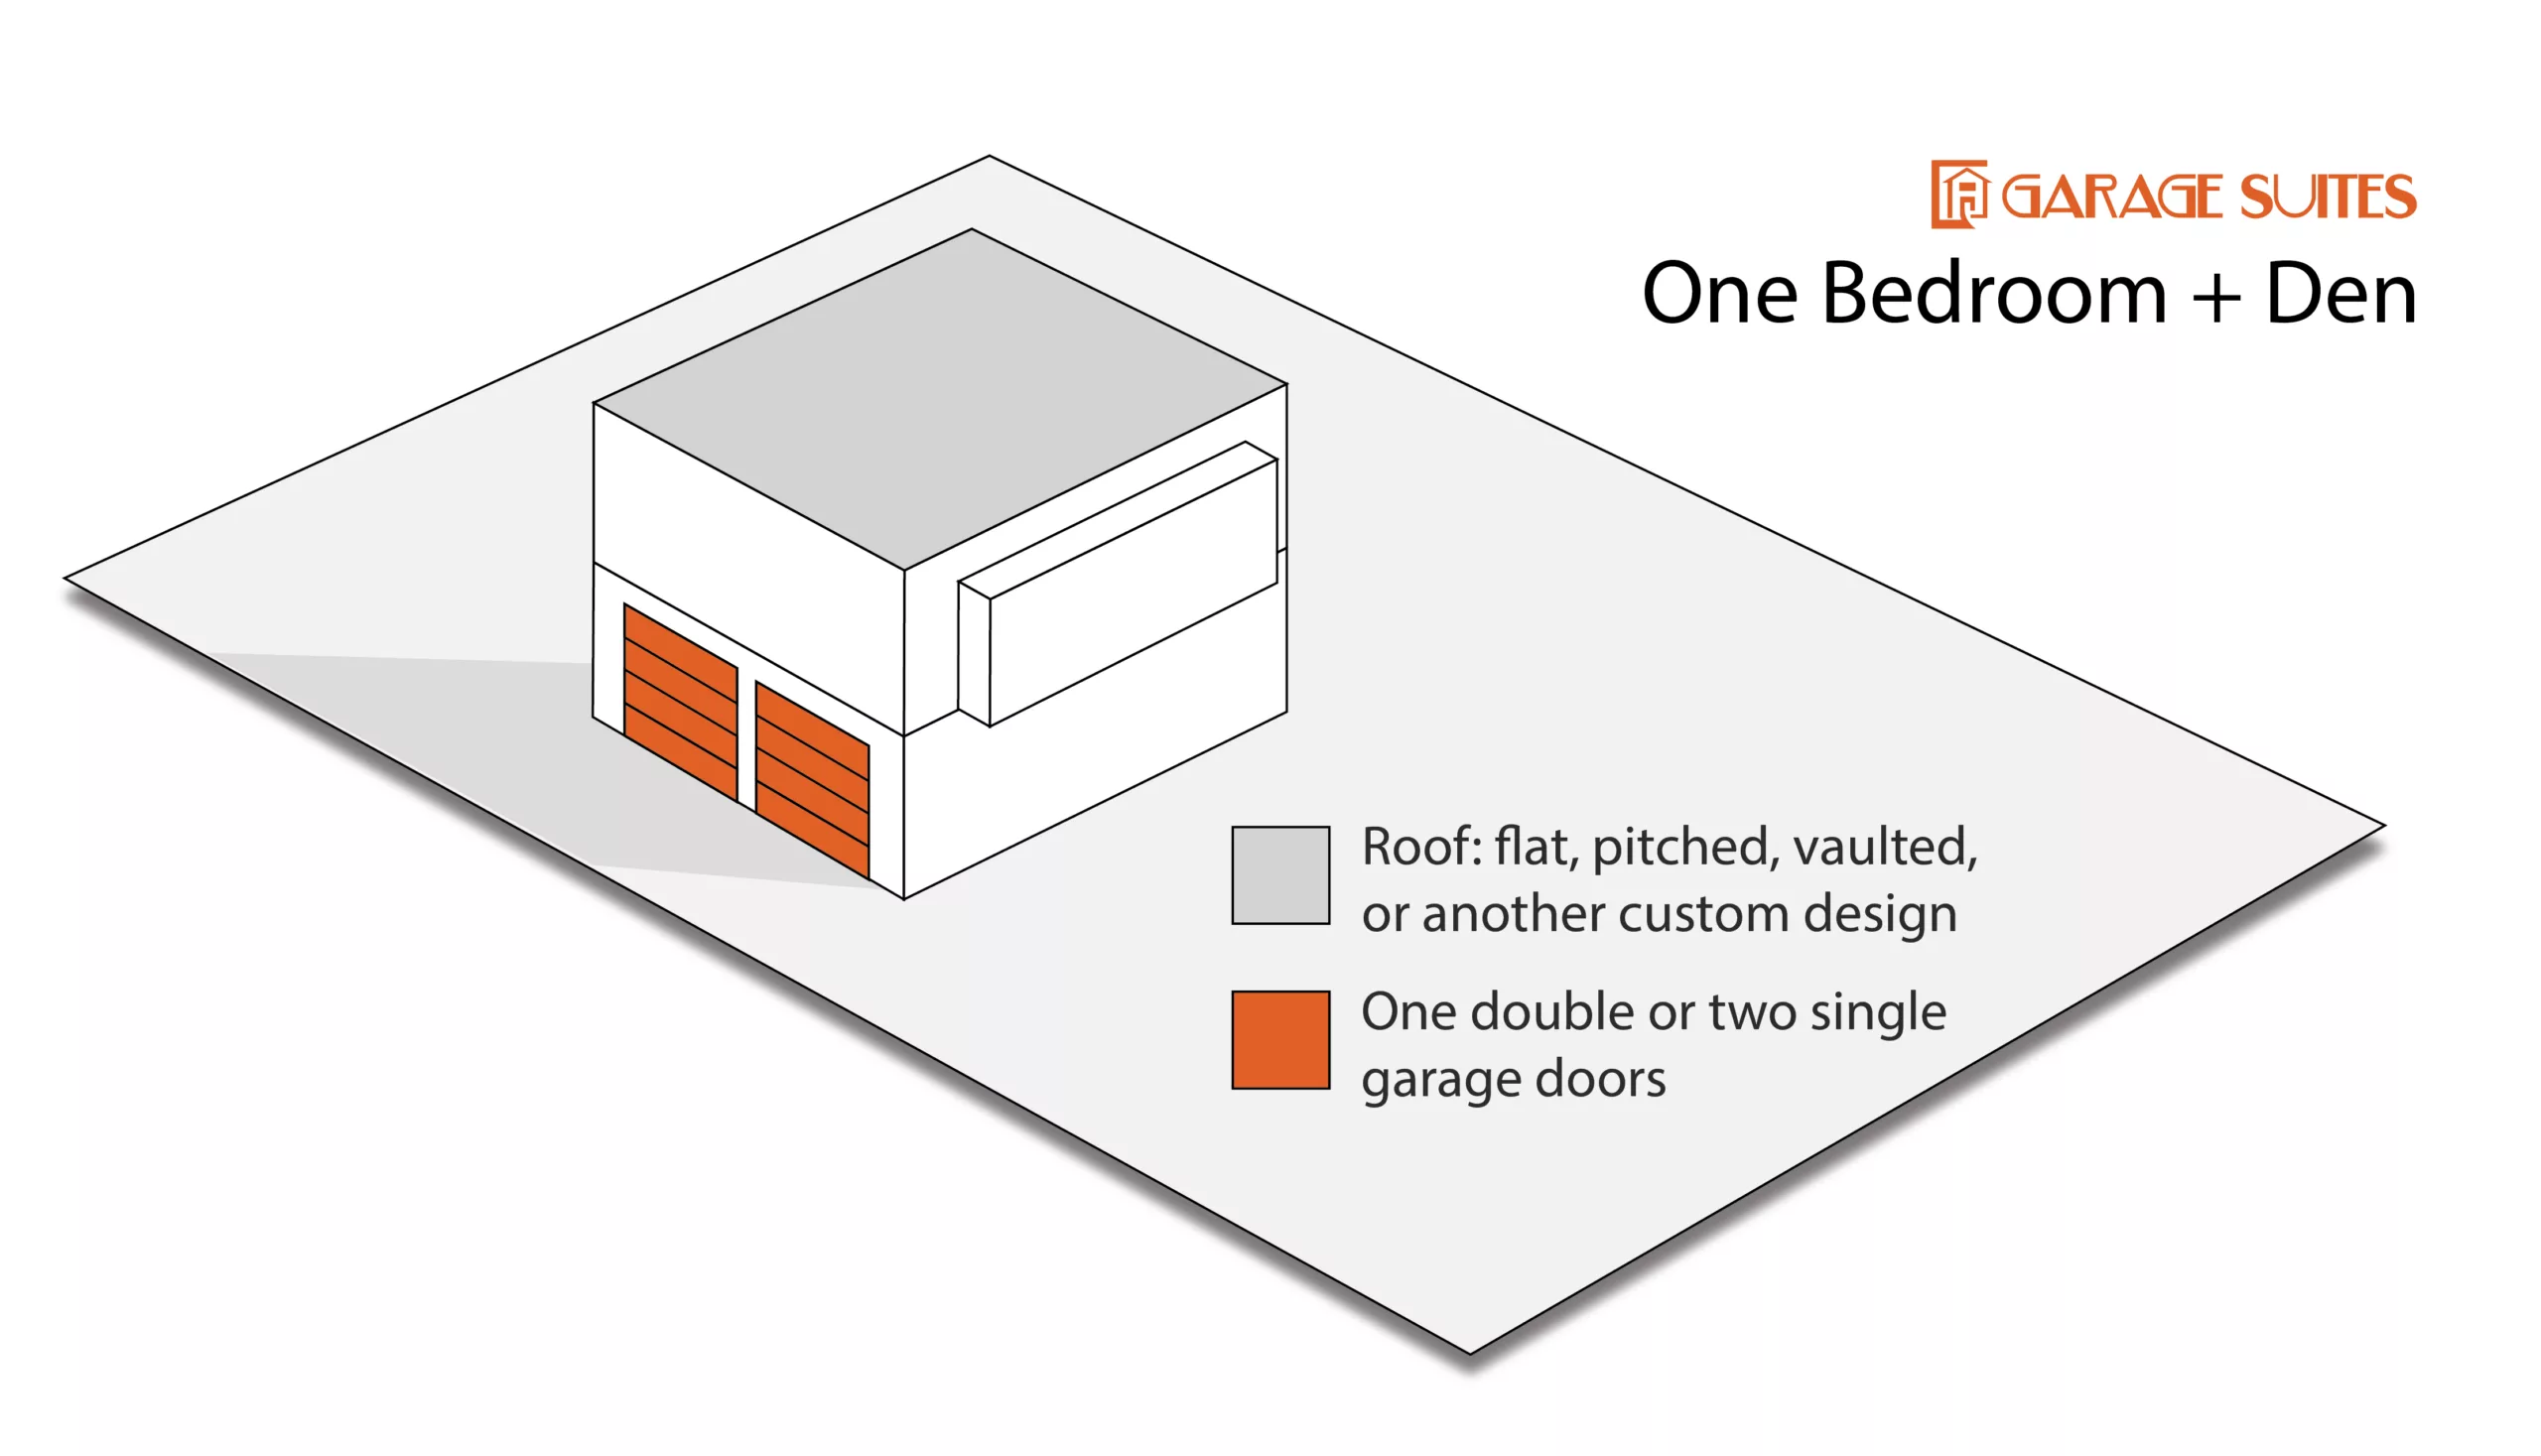 Garage Suite Configuration - One Bedroom + Den